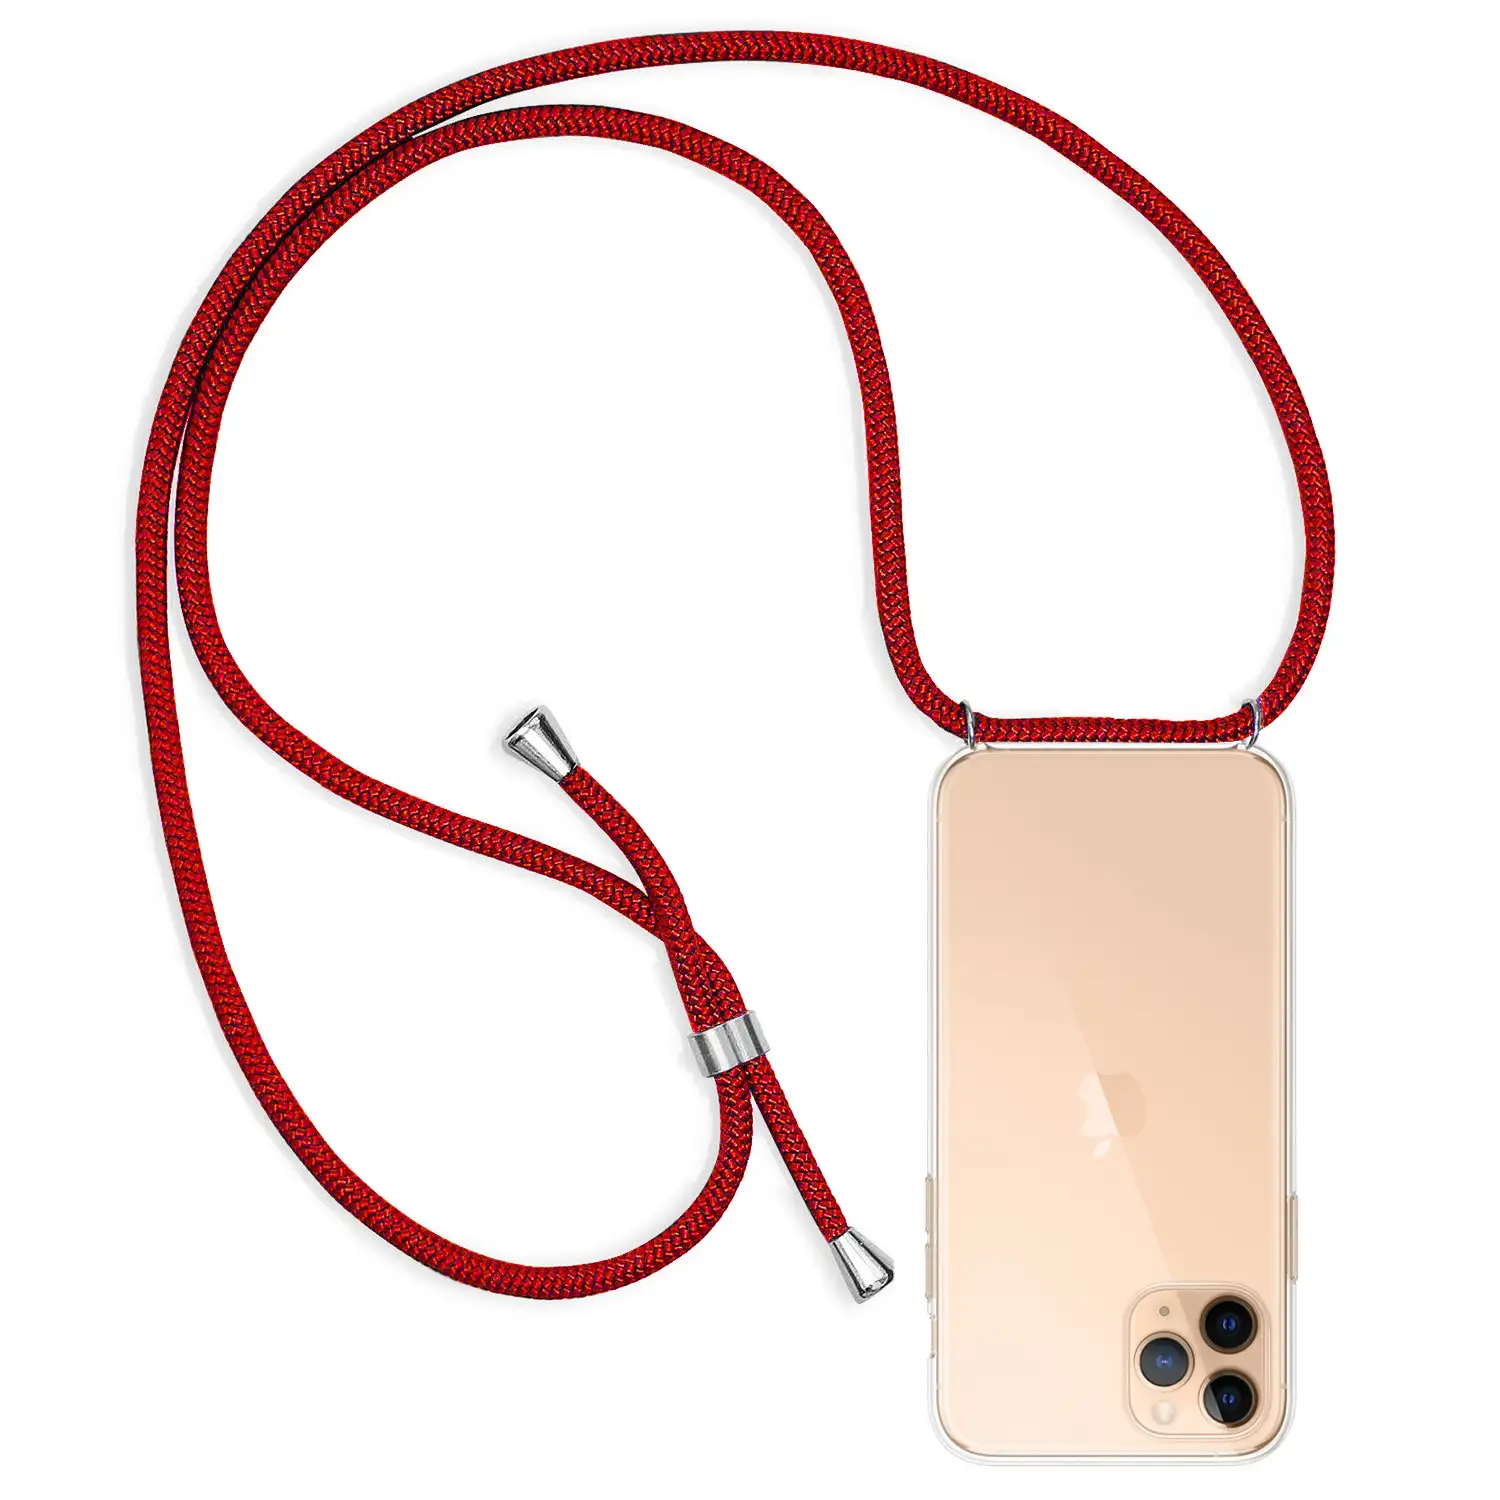 Carcasa transparente iPhone 11 Pro Max con colgante de nylon. Accesorio de moda, ajuste perfecto y máxima protección